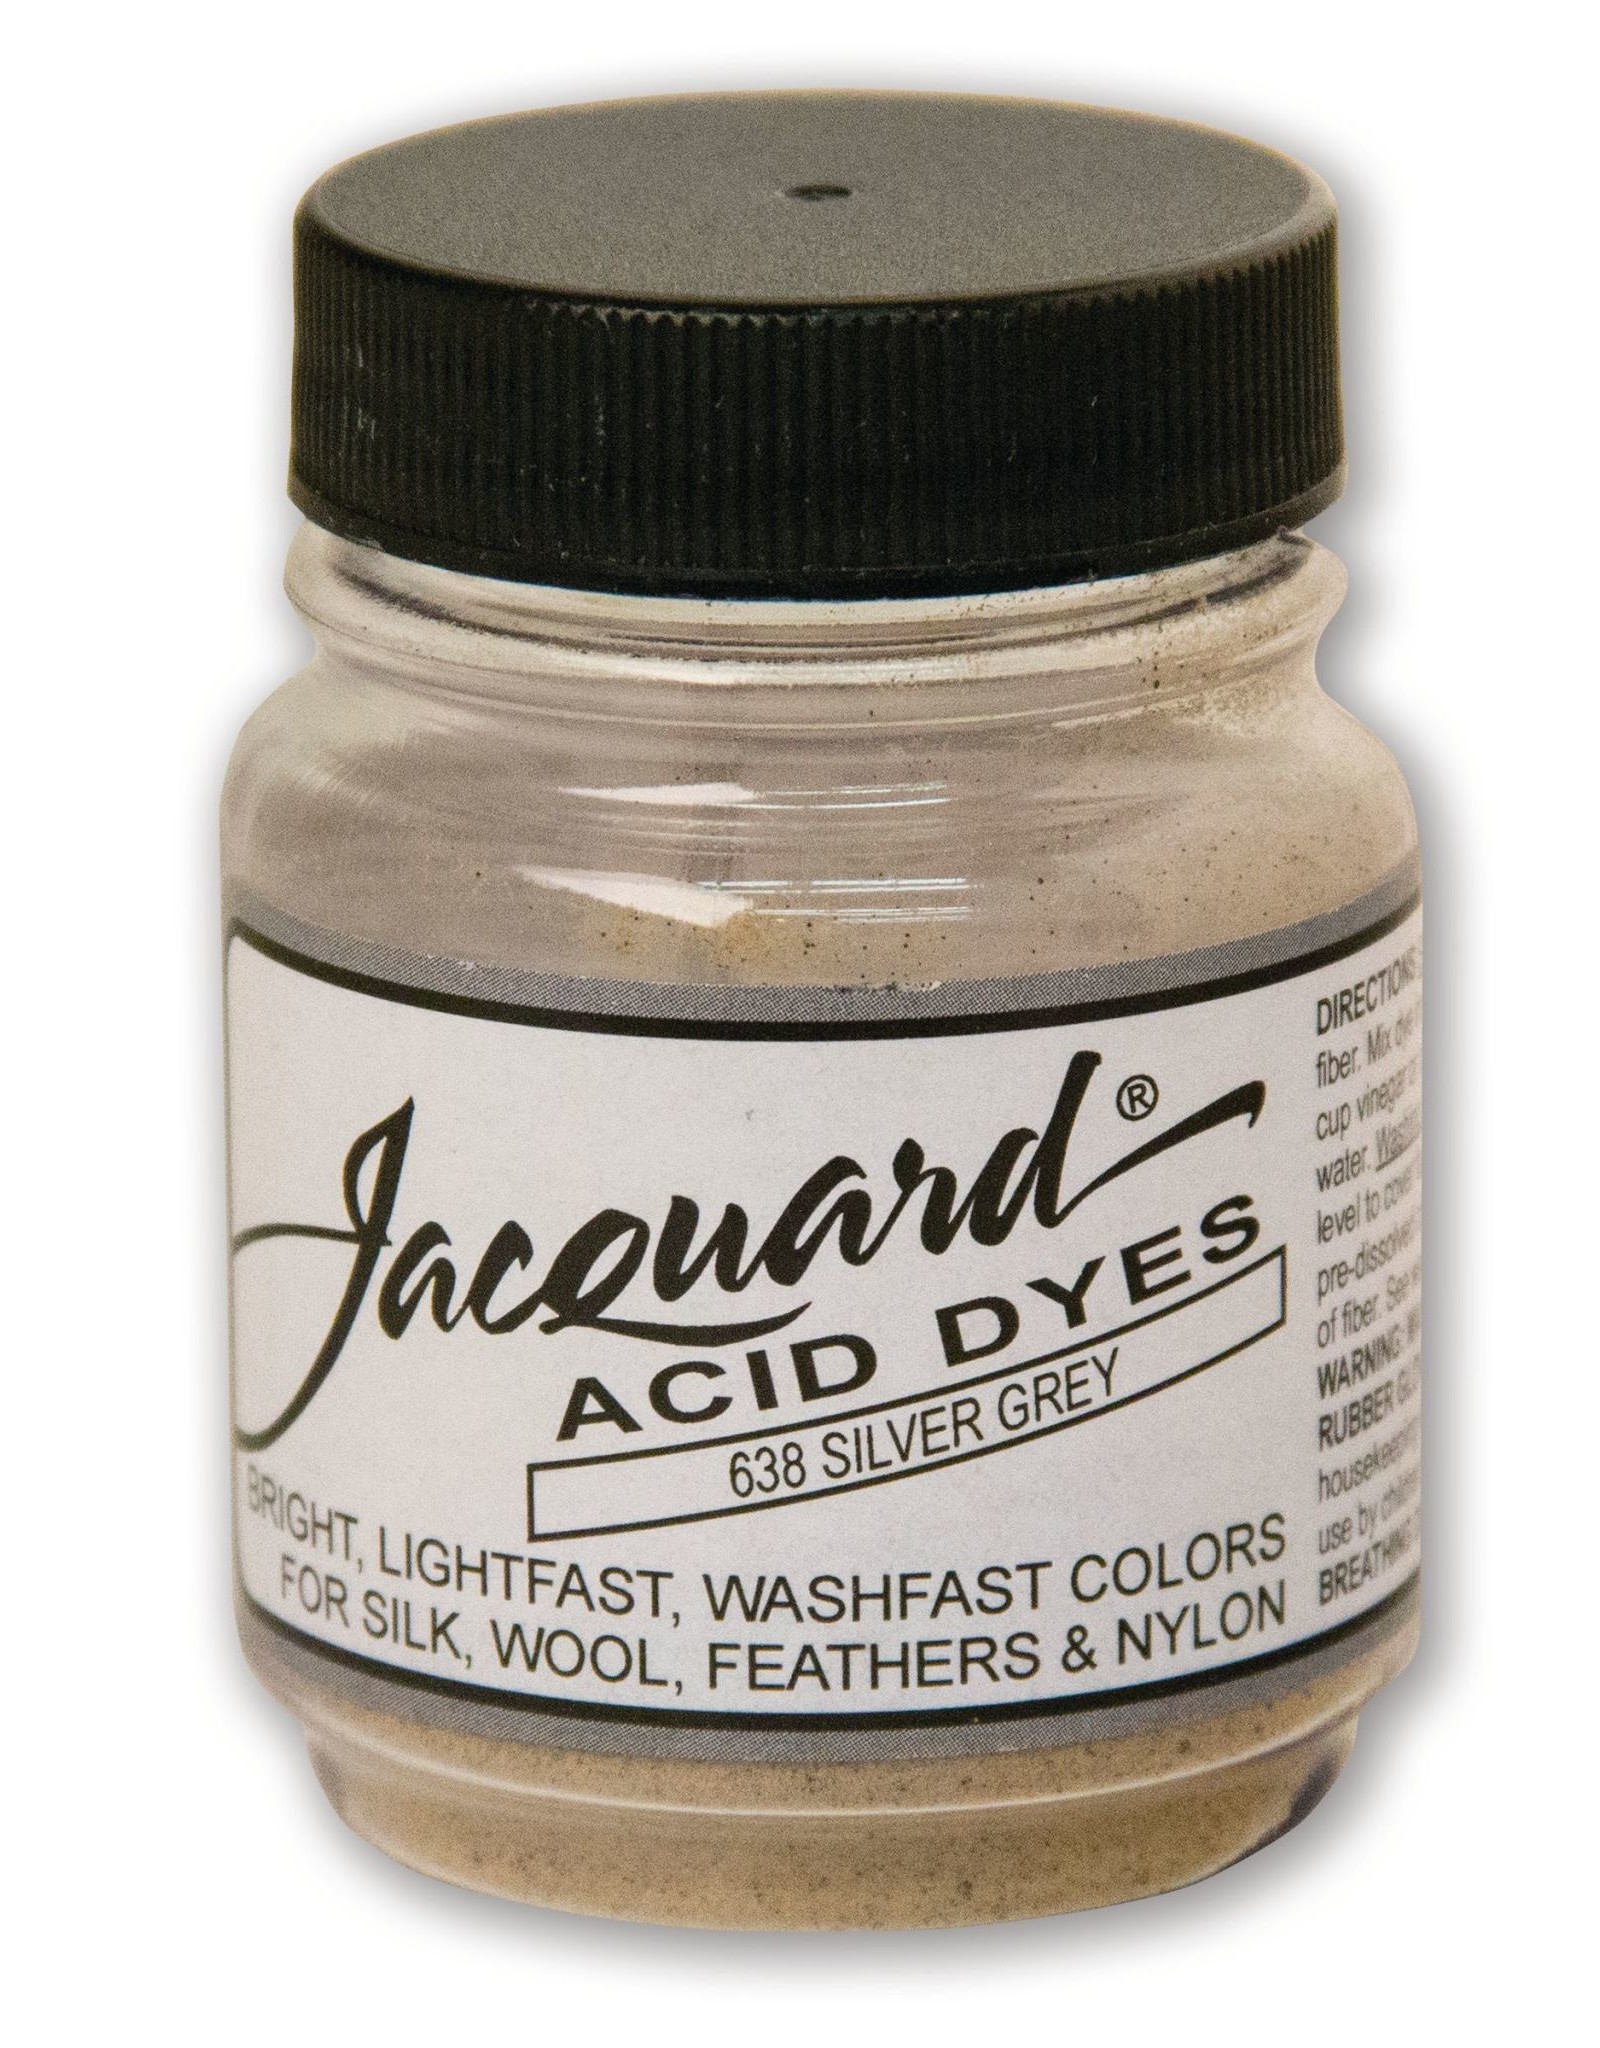 Jacquard Jacquard Acid Dye, #638 Silver Grey ½oz